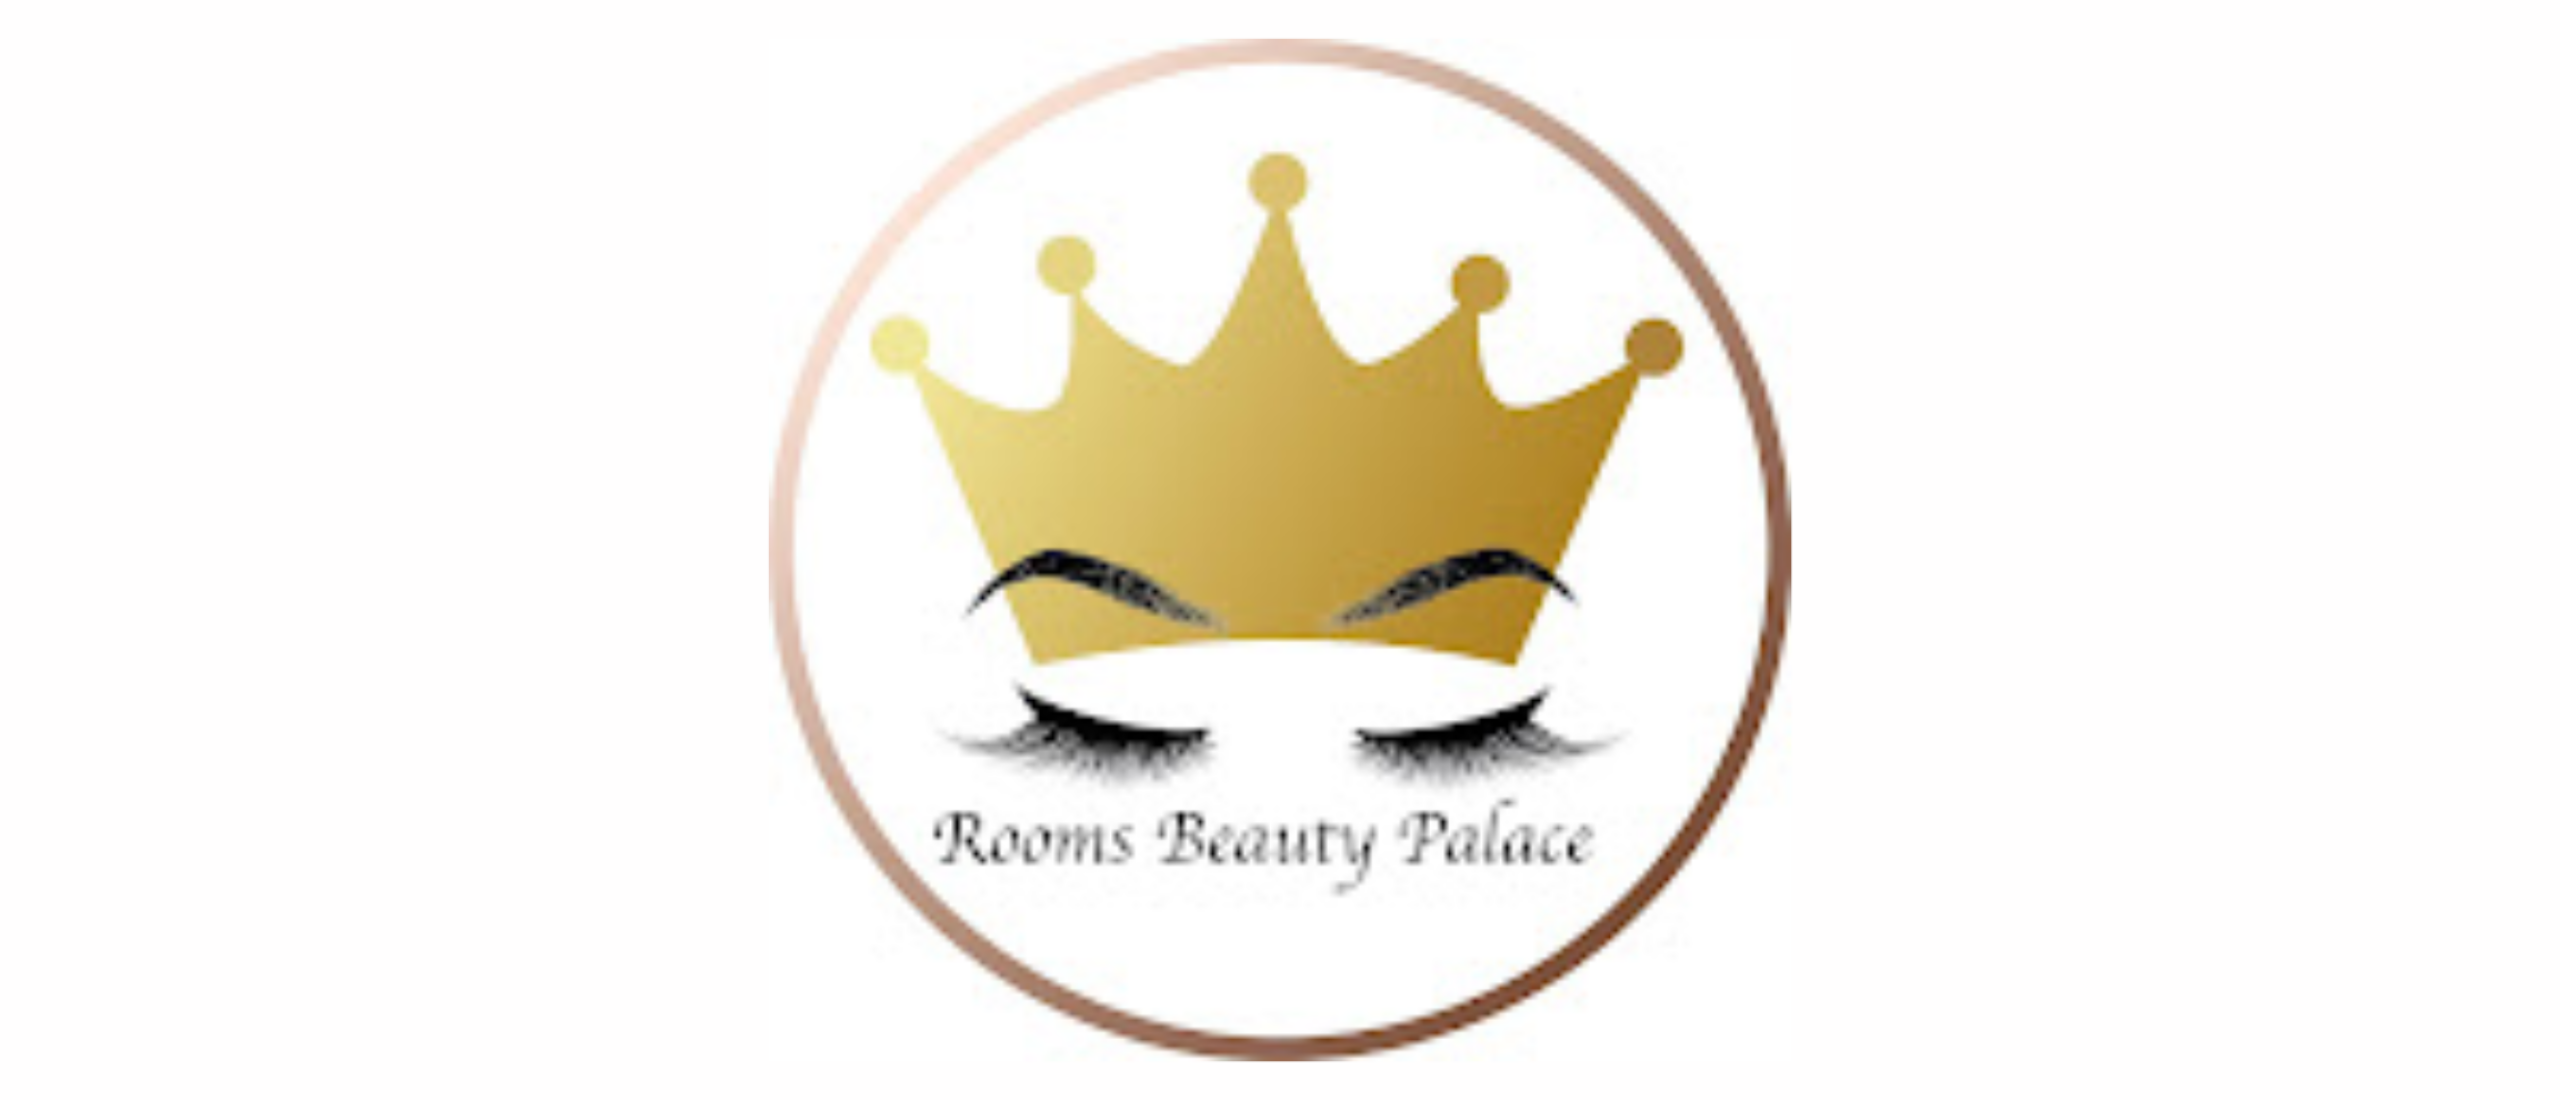 ntdek de veelzijdigheid van Rooms Beauty Palace: dé plek voor wimperextensions, waxen, pedicures en meer